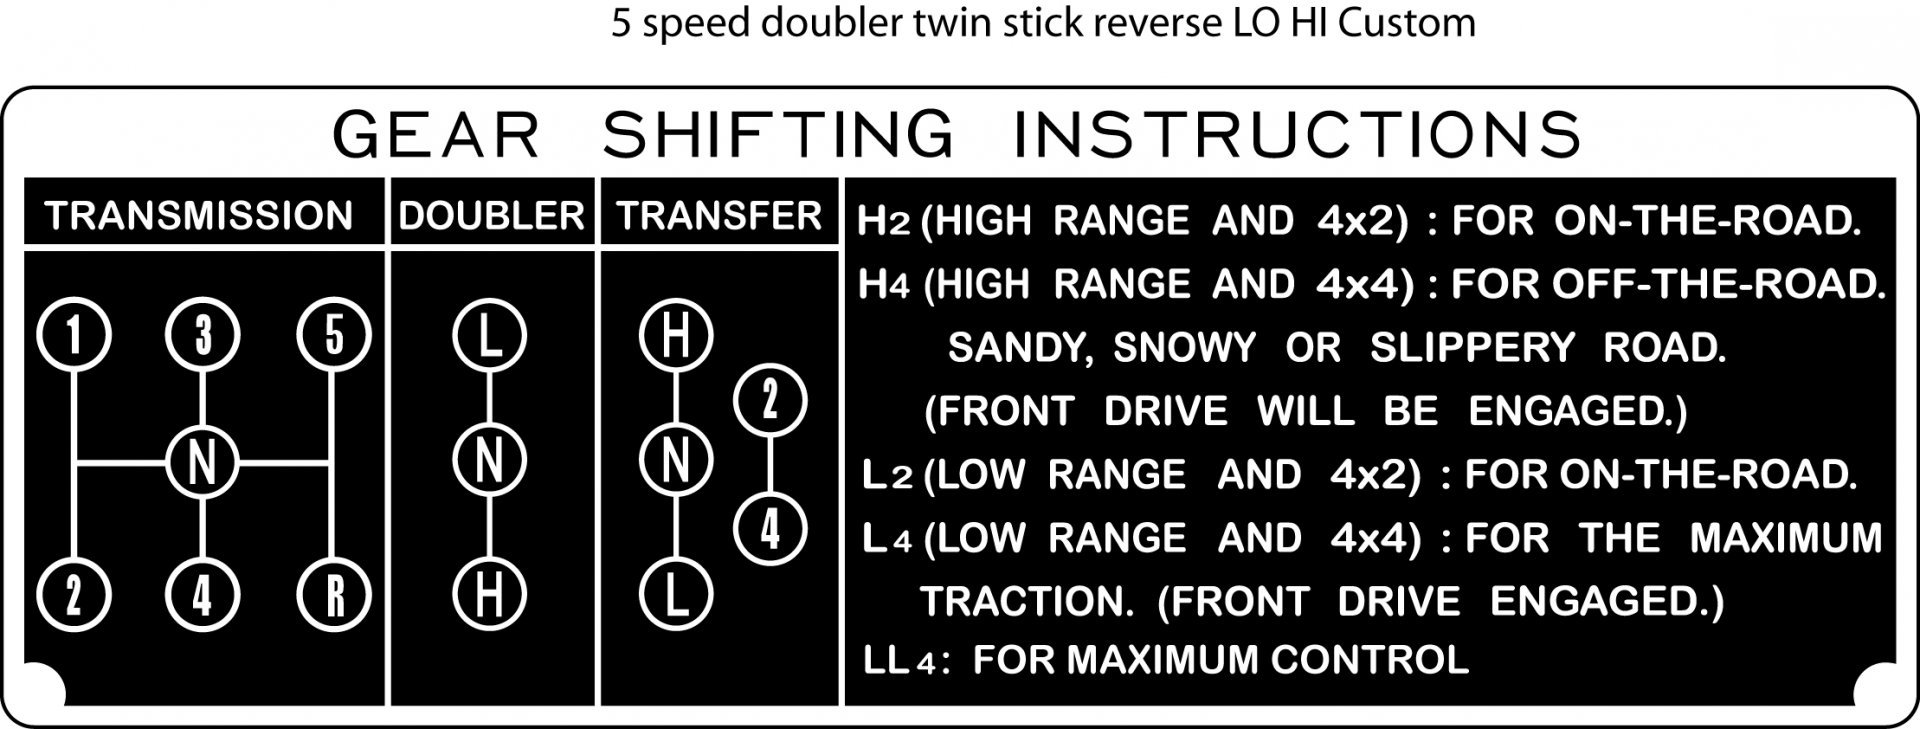 5 speed doubler twin stick reverse LO HI Custom.jpg